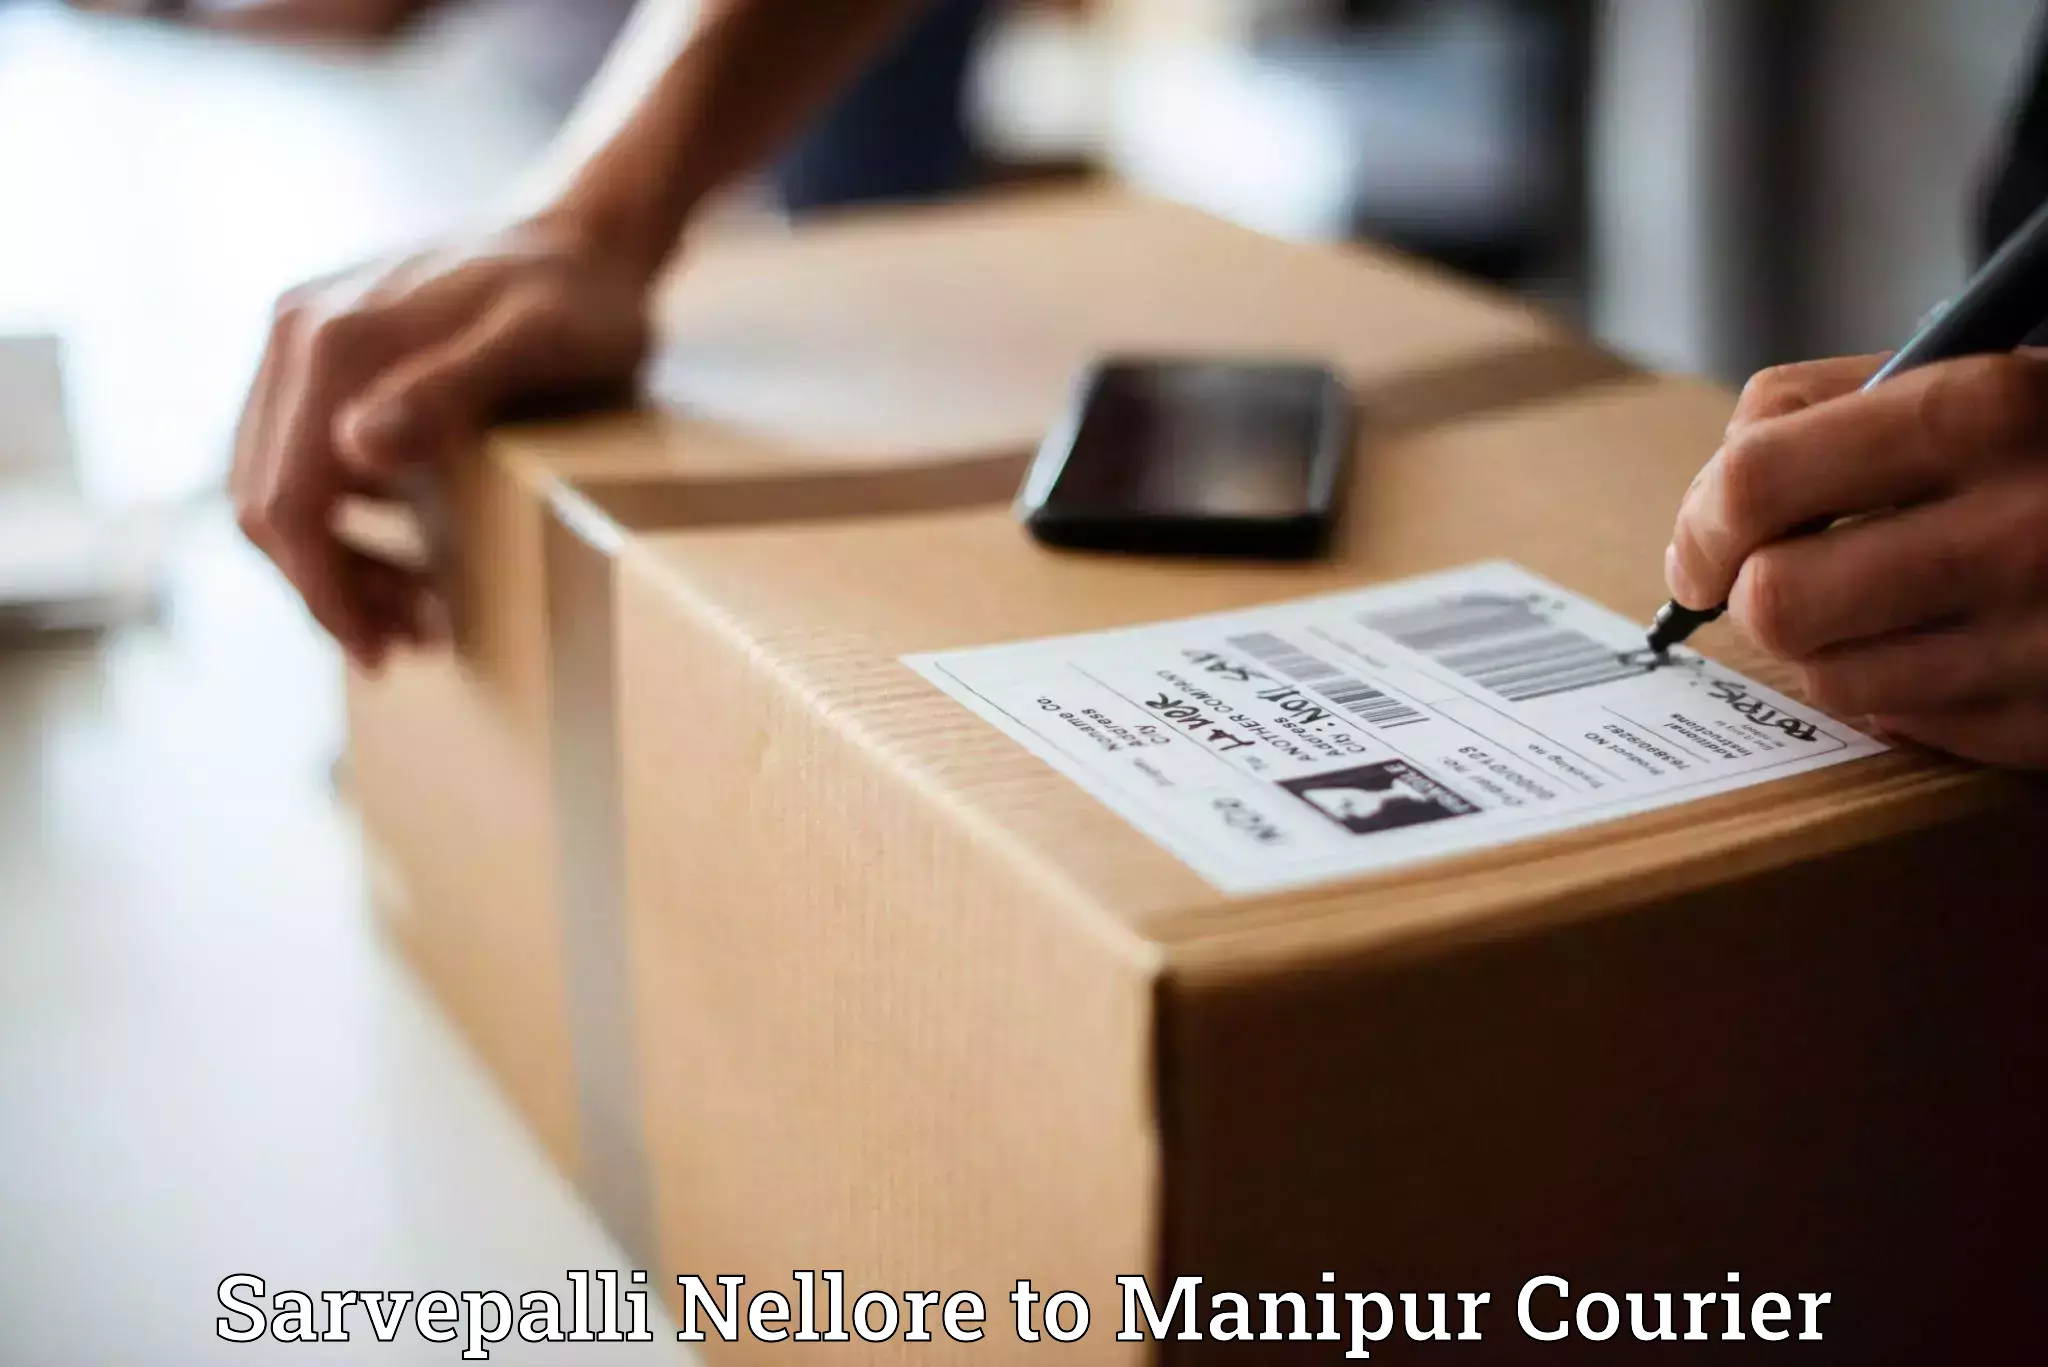 Reliable delivery network Sarvepalli Nellore to Kanti